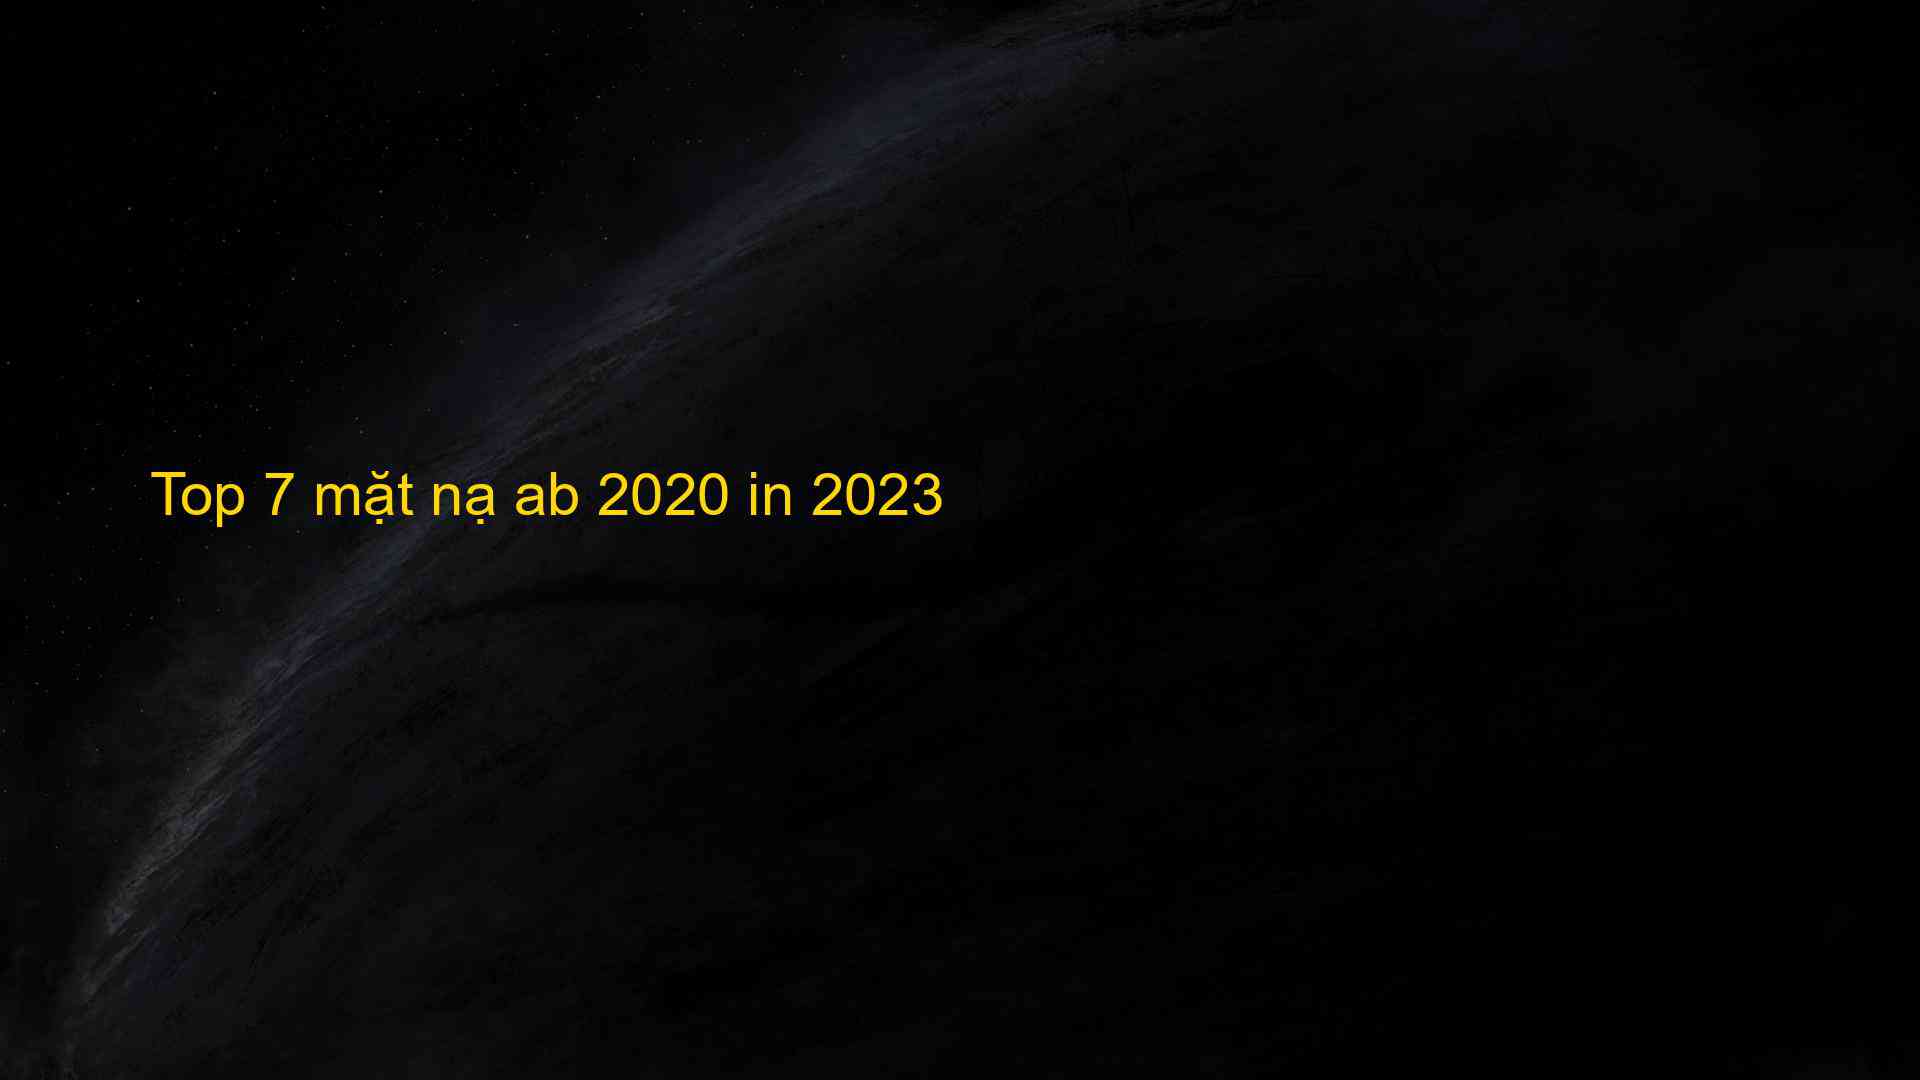 Top 7 mặt nạ ab 2020 in 2023 - Chia Sẻ Kiến Thức Điện Máy Việt Nam